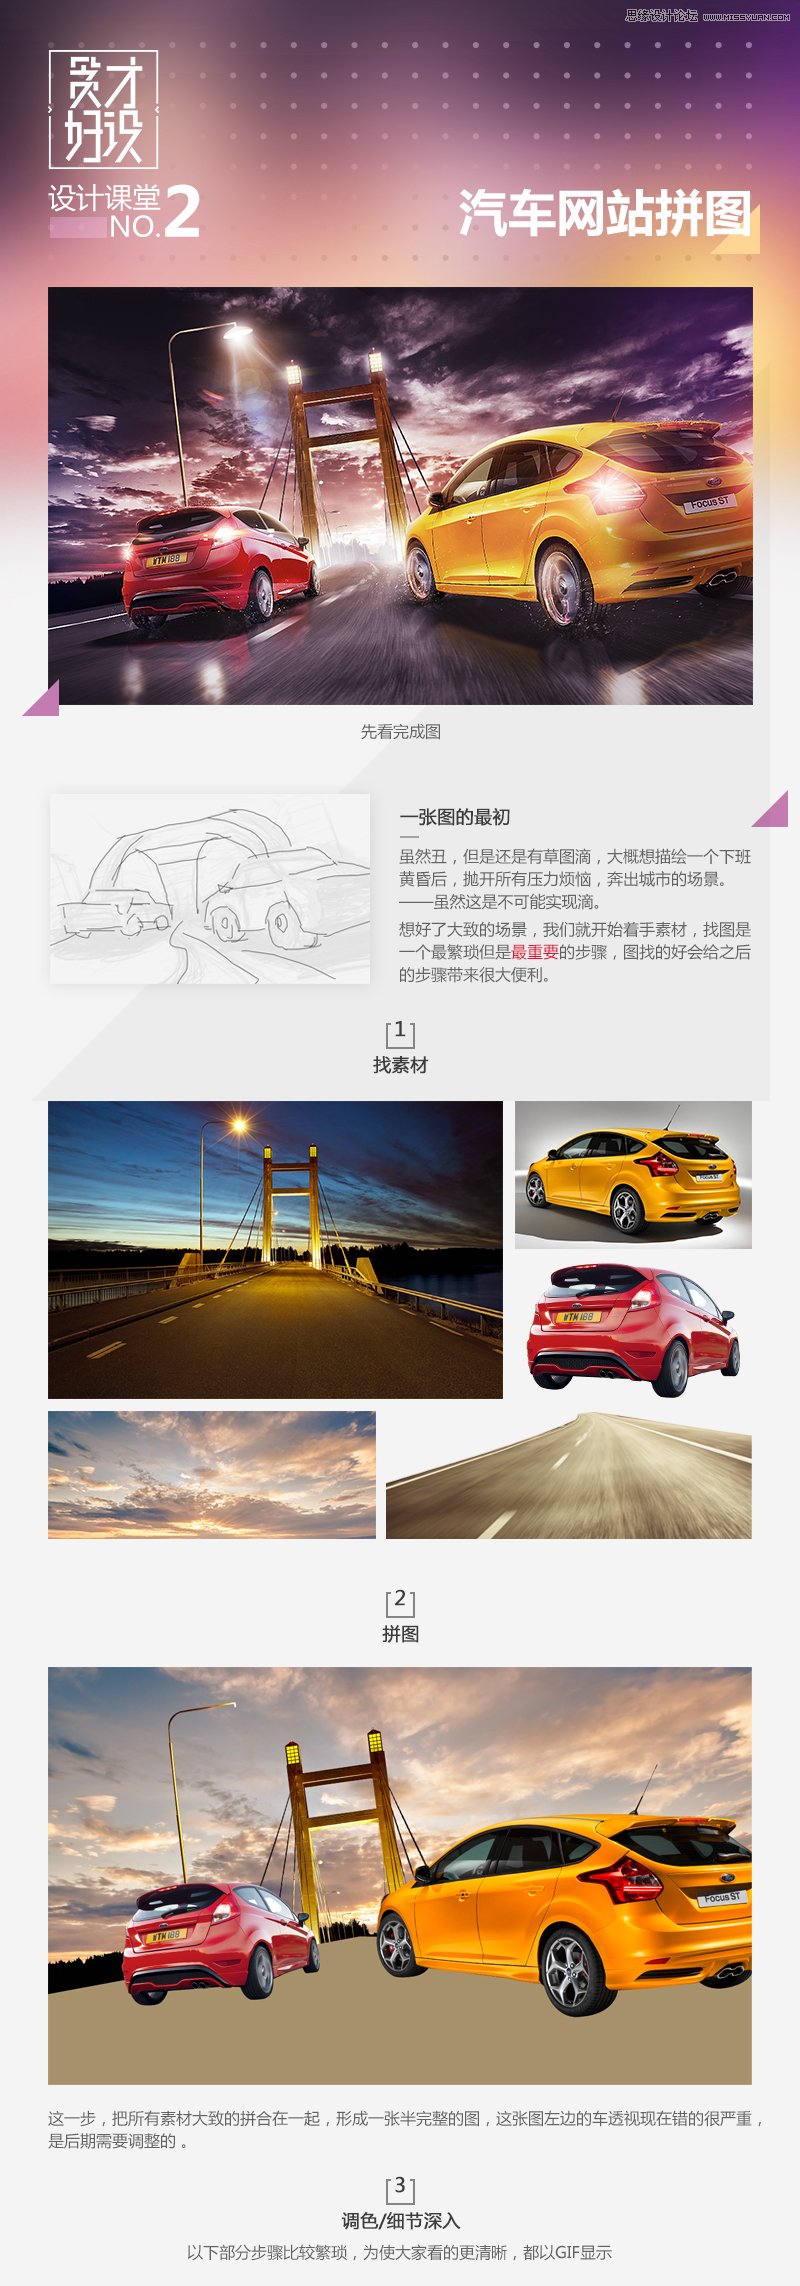 汽车海报，Photoshop制作福特汽车网站主题海报设计教程